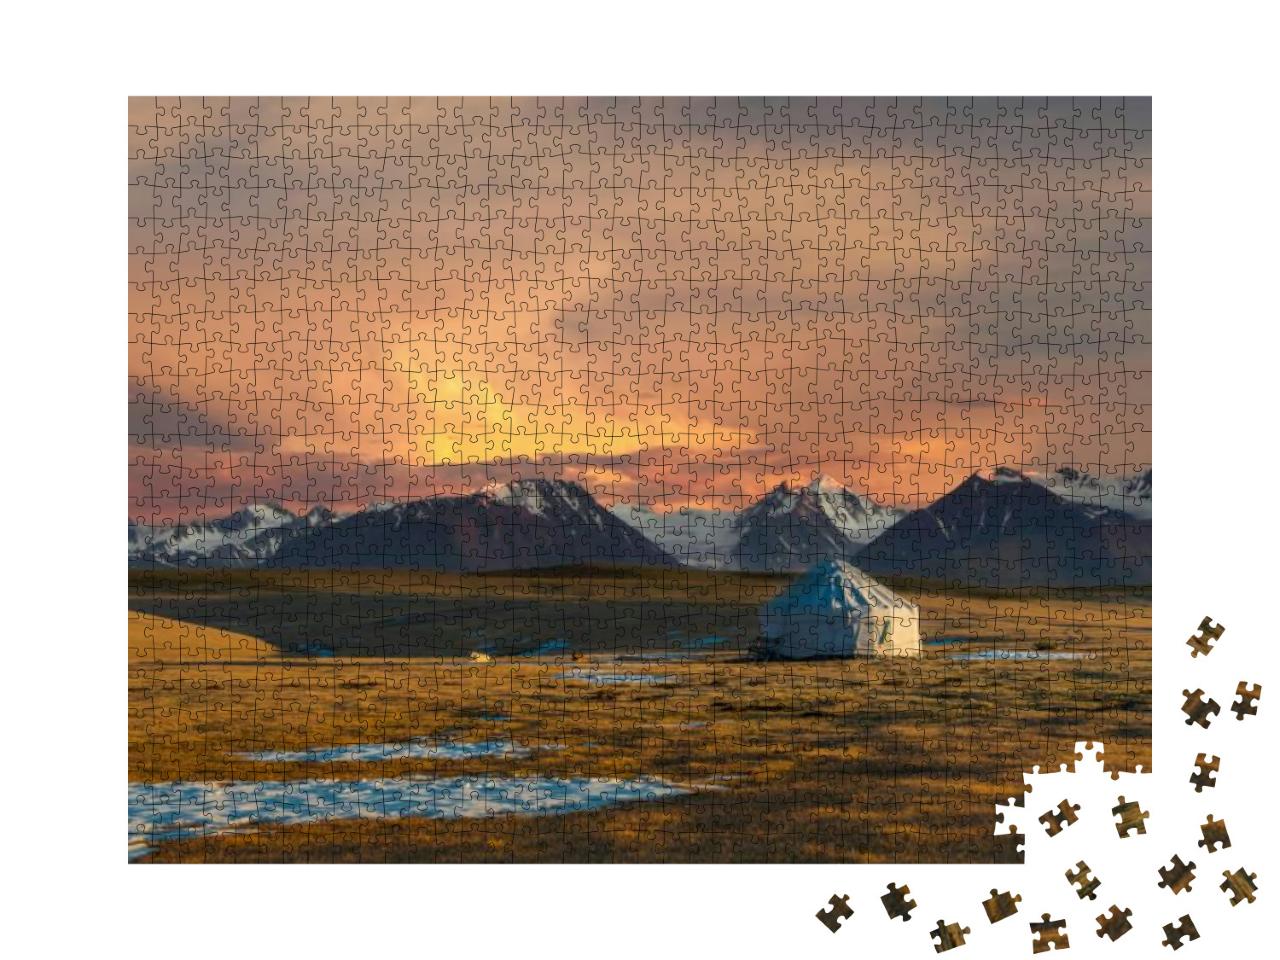 Kazakh Yurt on Steppe, Kazakhstan, Near Almaty City... Jigsaw Puzzle with 1000 pieces